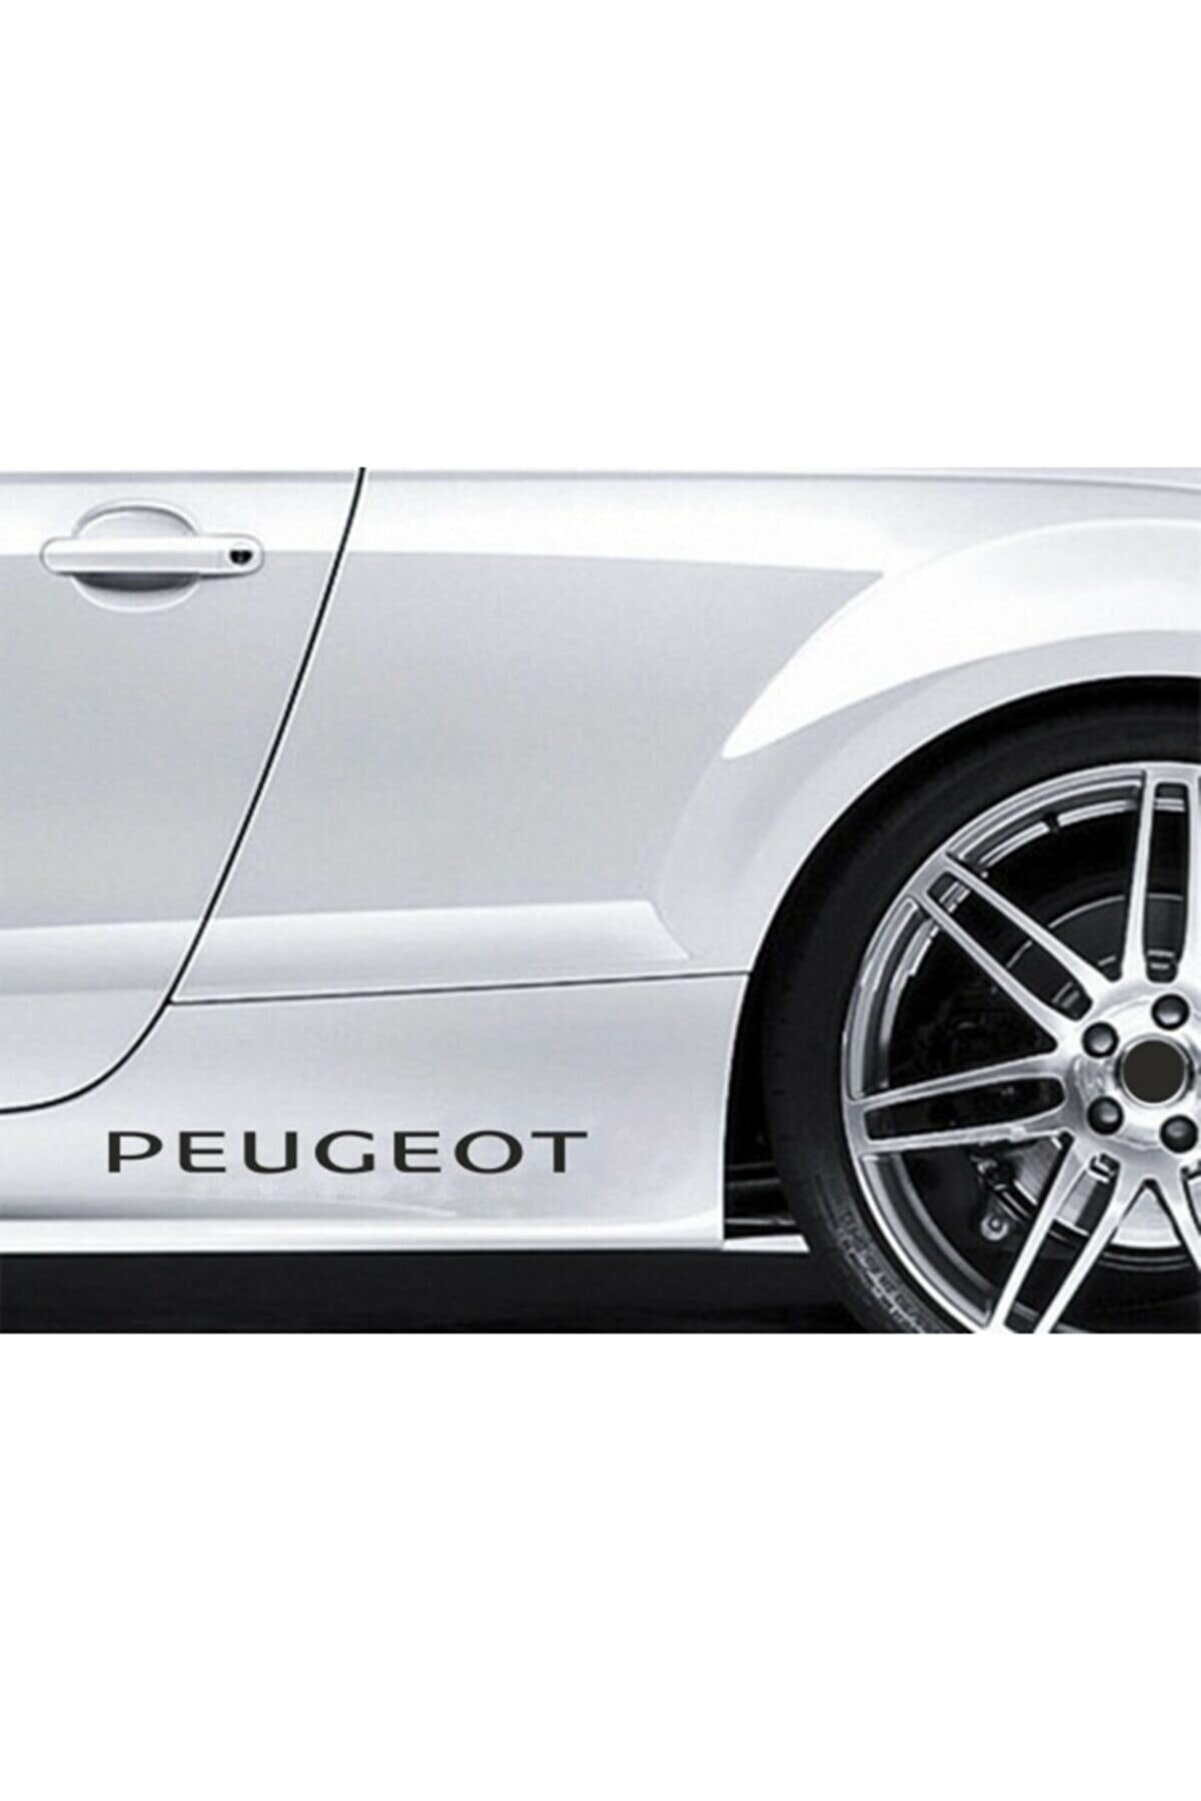 TSC Peugeot Yapıştırma Marşpiyel Yazısı Sticker 2 Adet